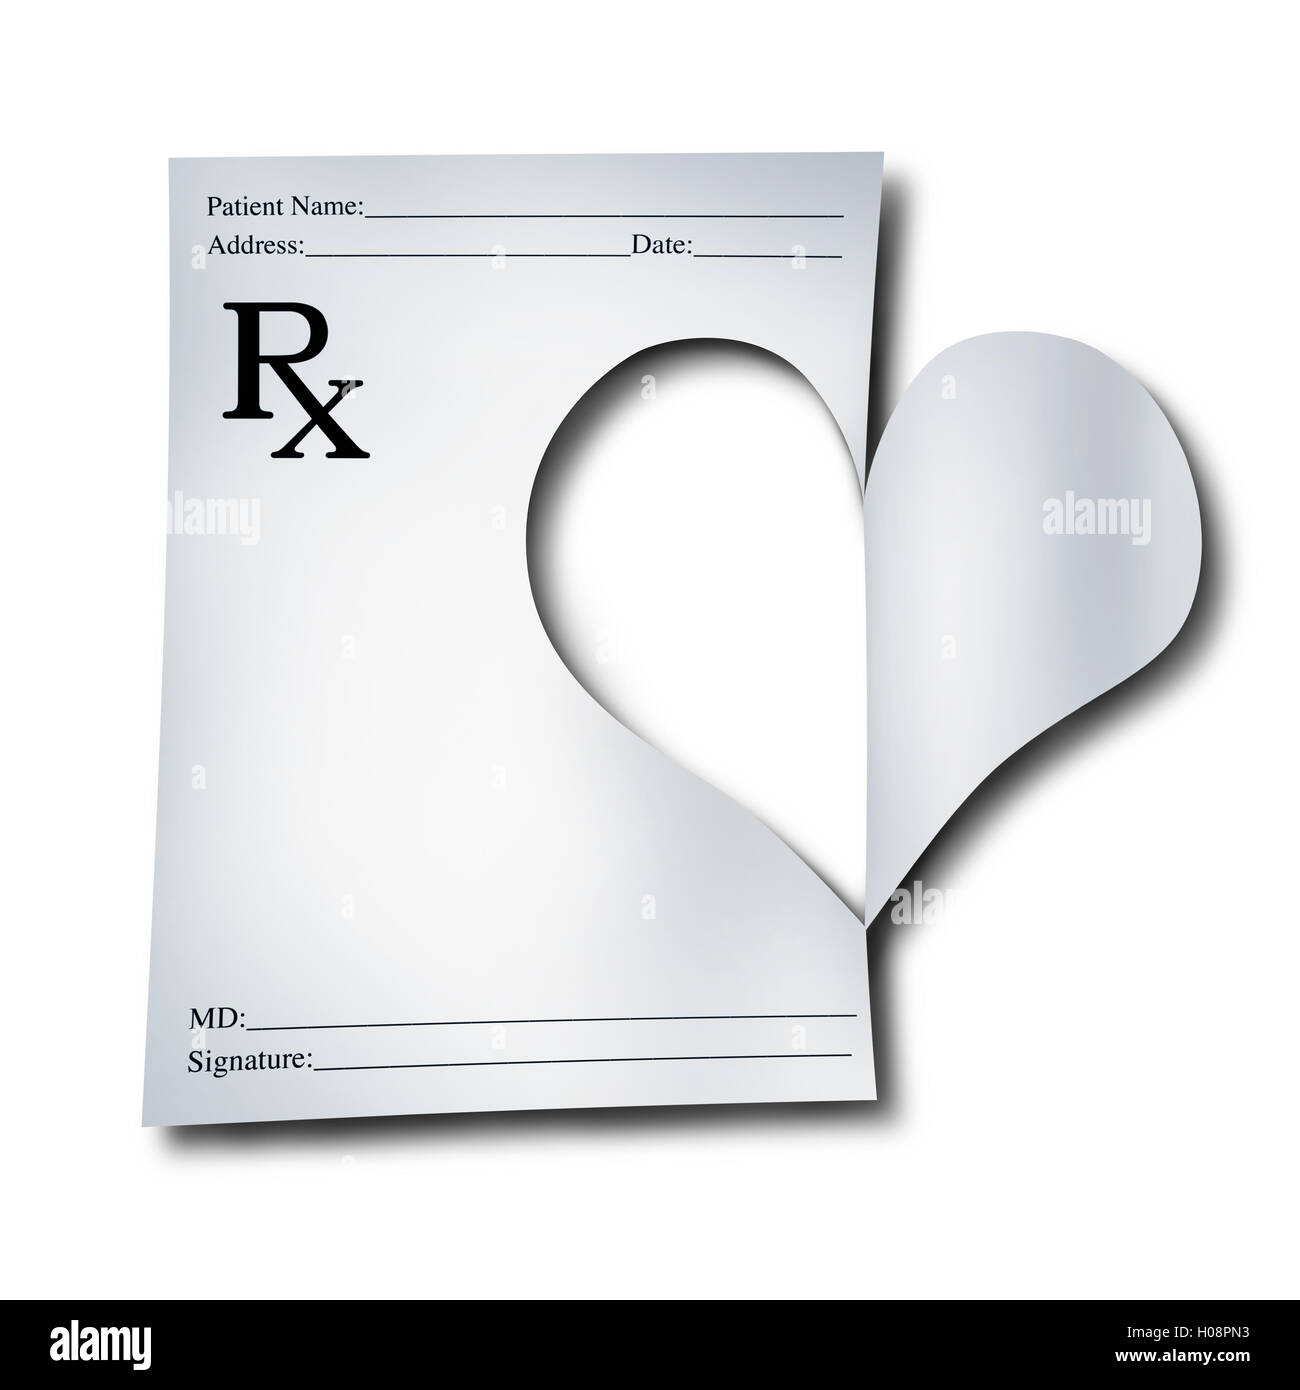 Medizin-Konzept für das Gesundheitswesen als Papier ärztliche Verschreibung beachten, der Ausschnitt in der Form eines Herzens als Symbol für Arzt oder Apotheker Pflege mit 3D Abbildung Elemente wurde. Stockfoto